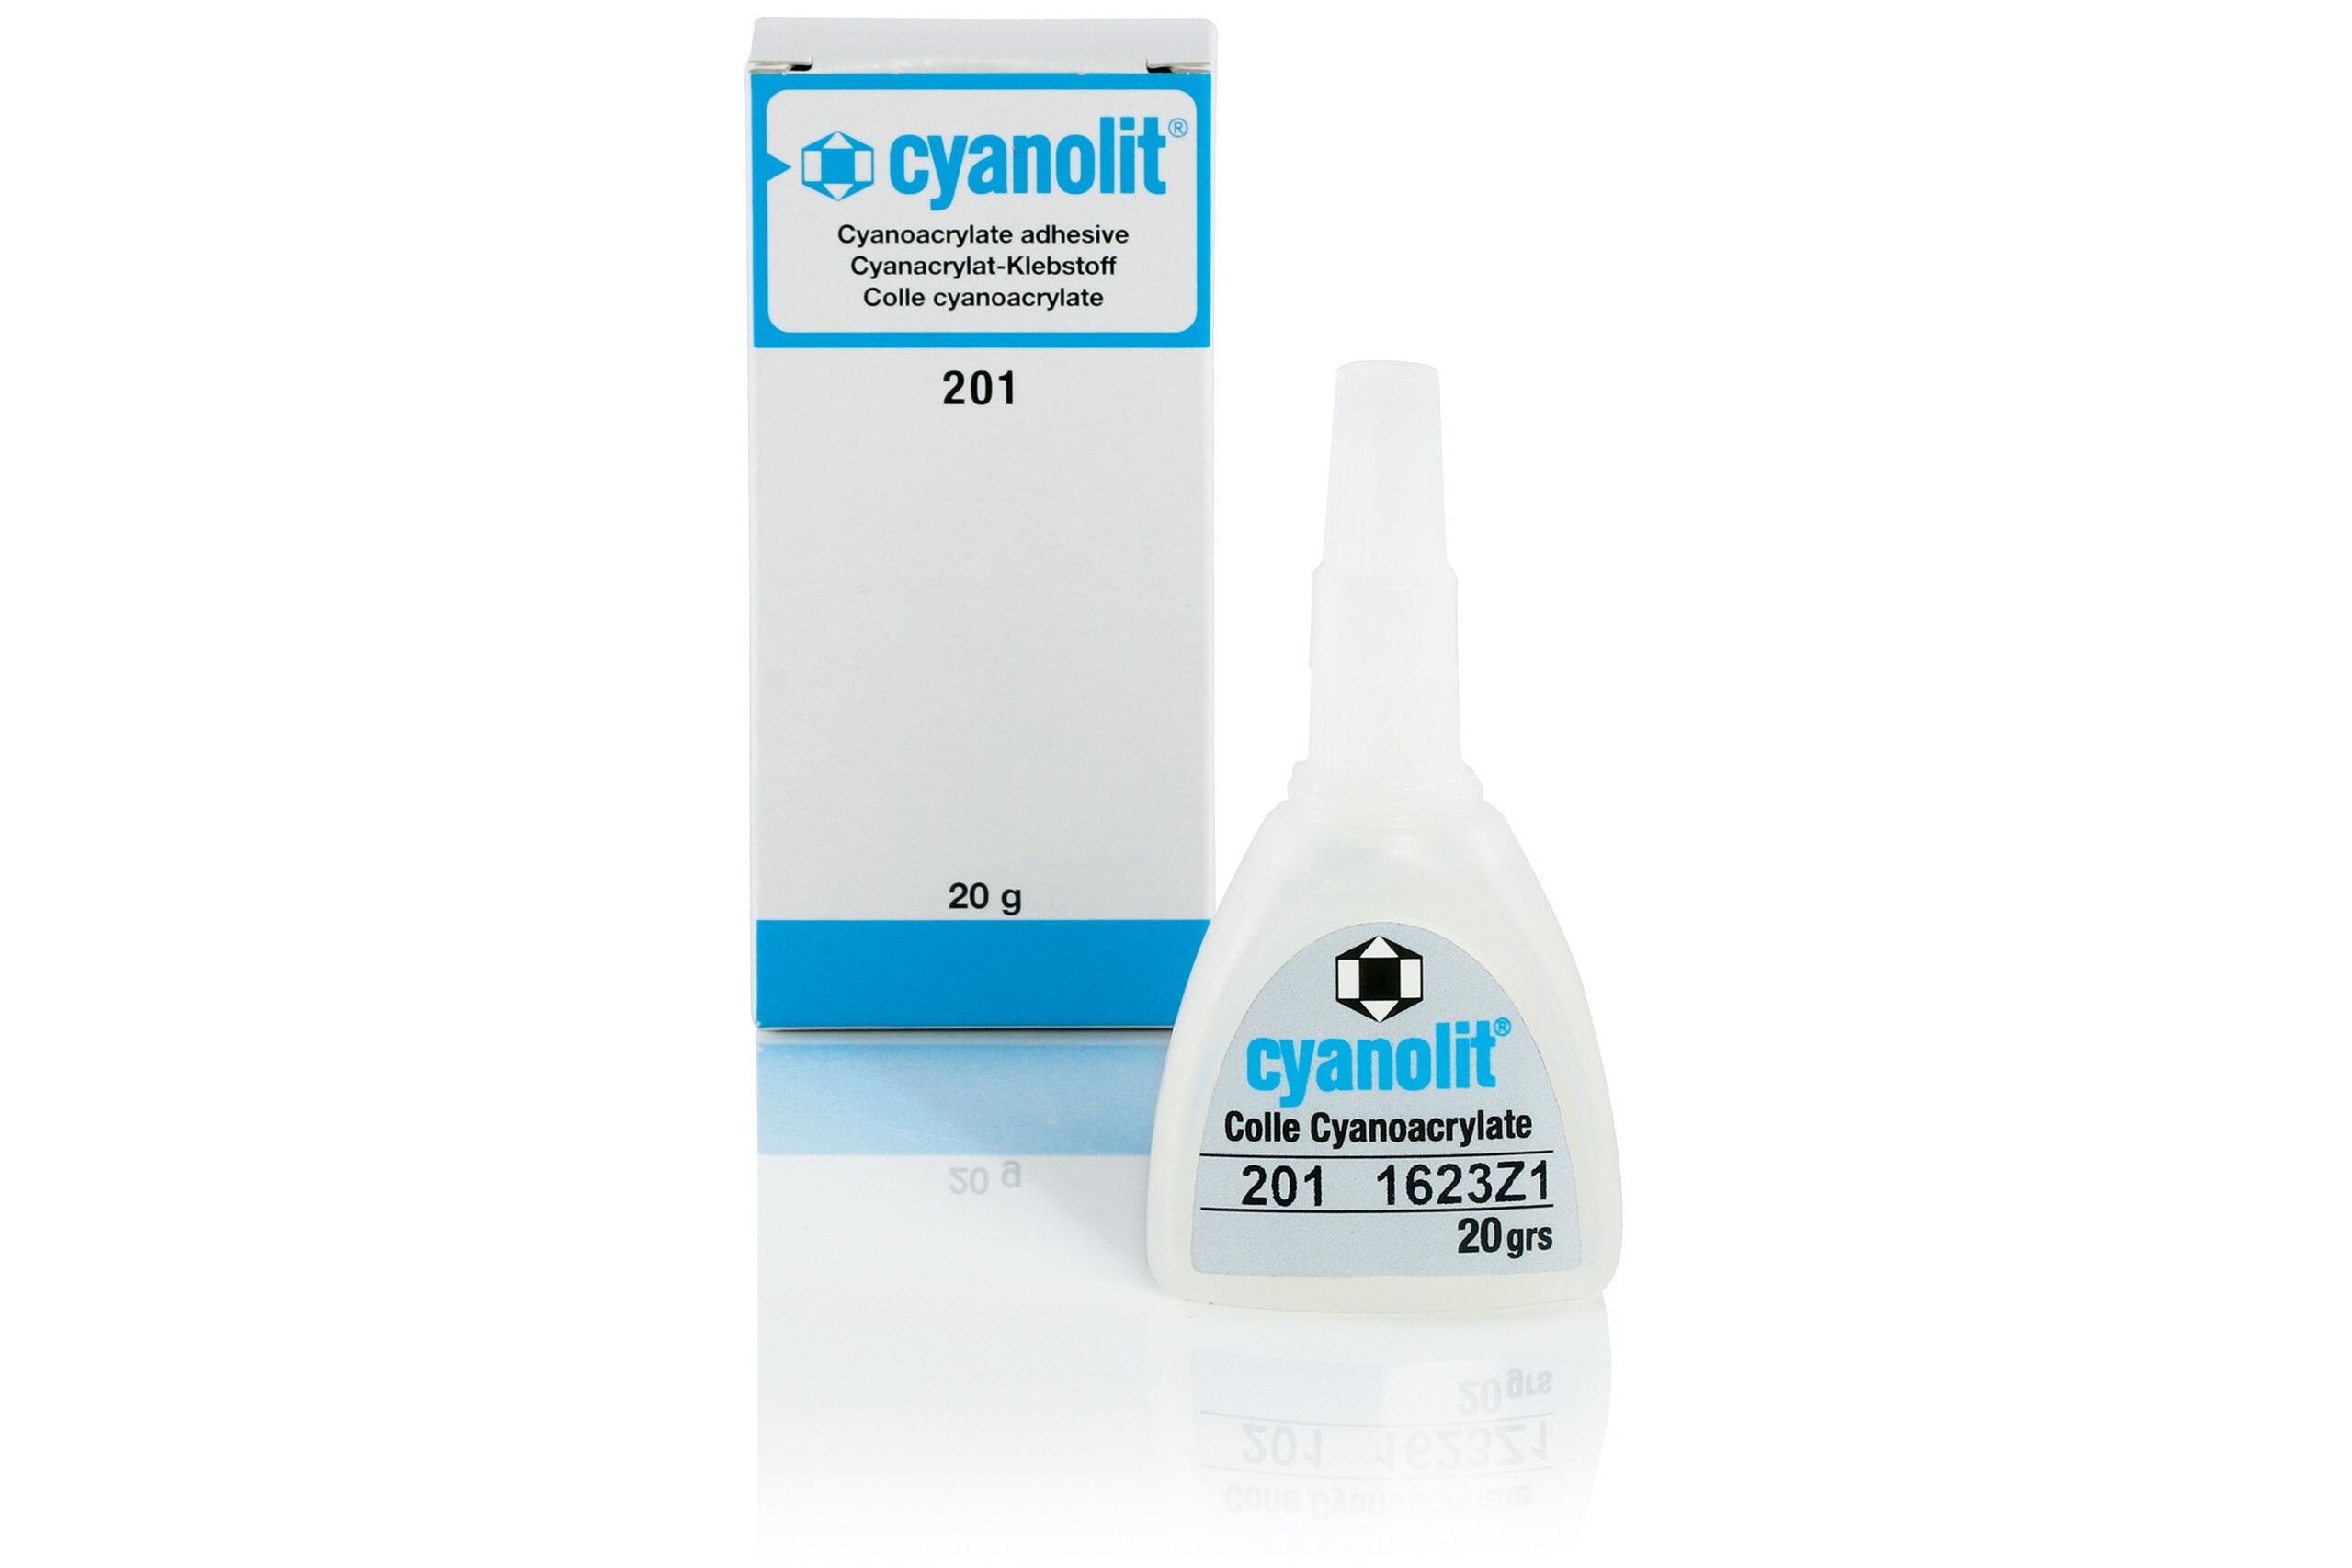 Ein 20-g-Fläschen Cyanolit